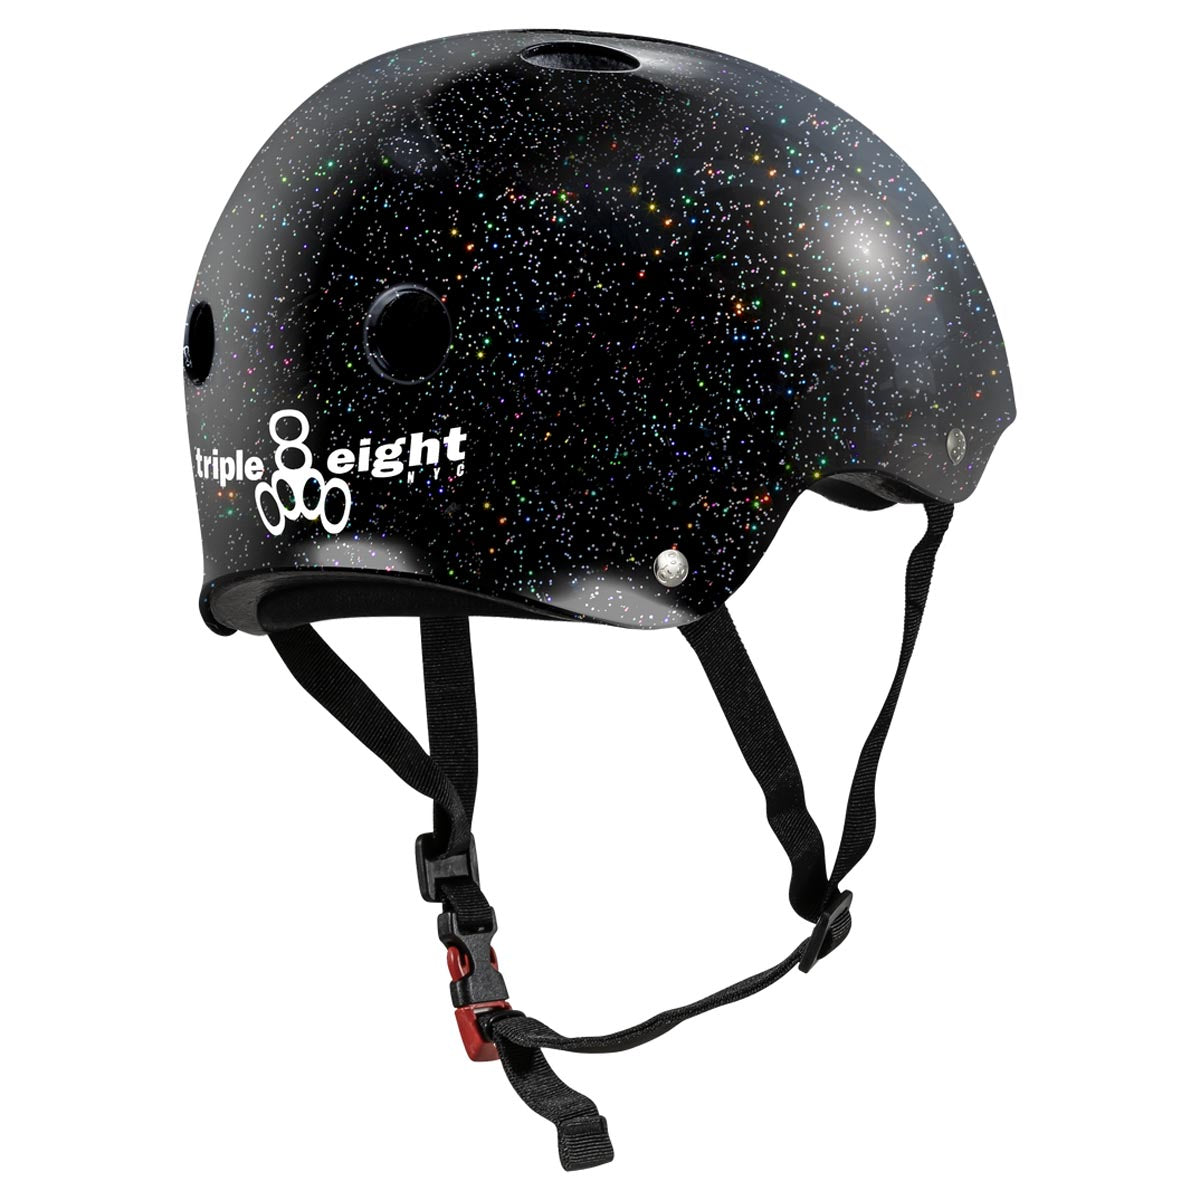 Triple Eight Certified Sweatsaver Helmet - Black Glitter image 2